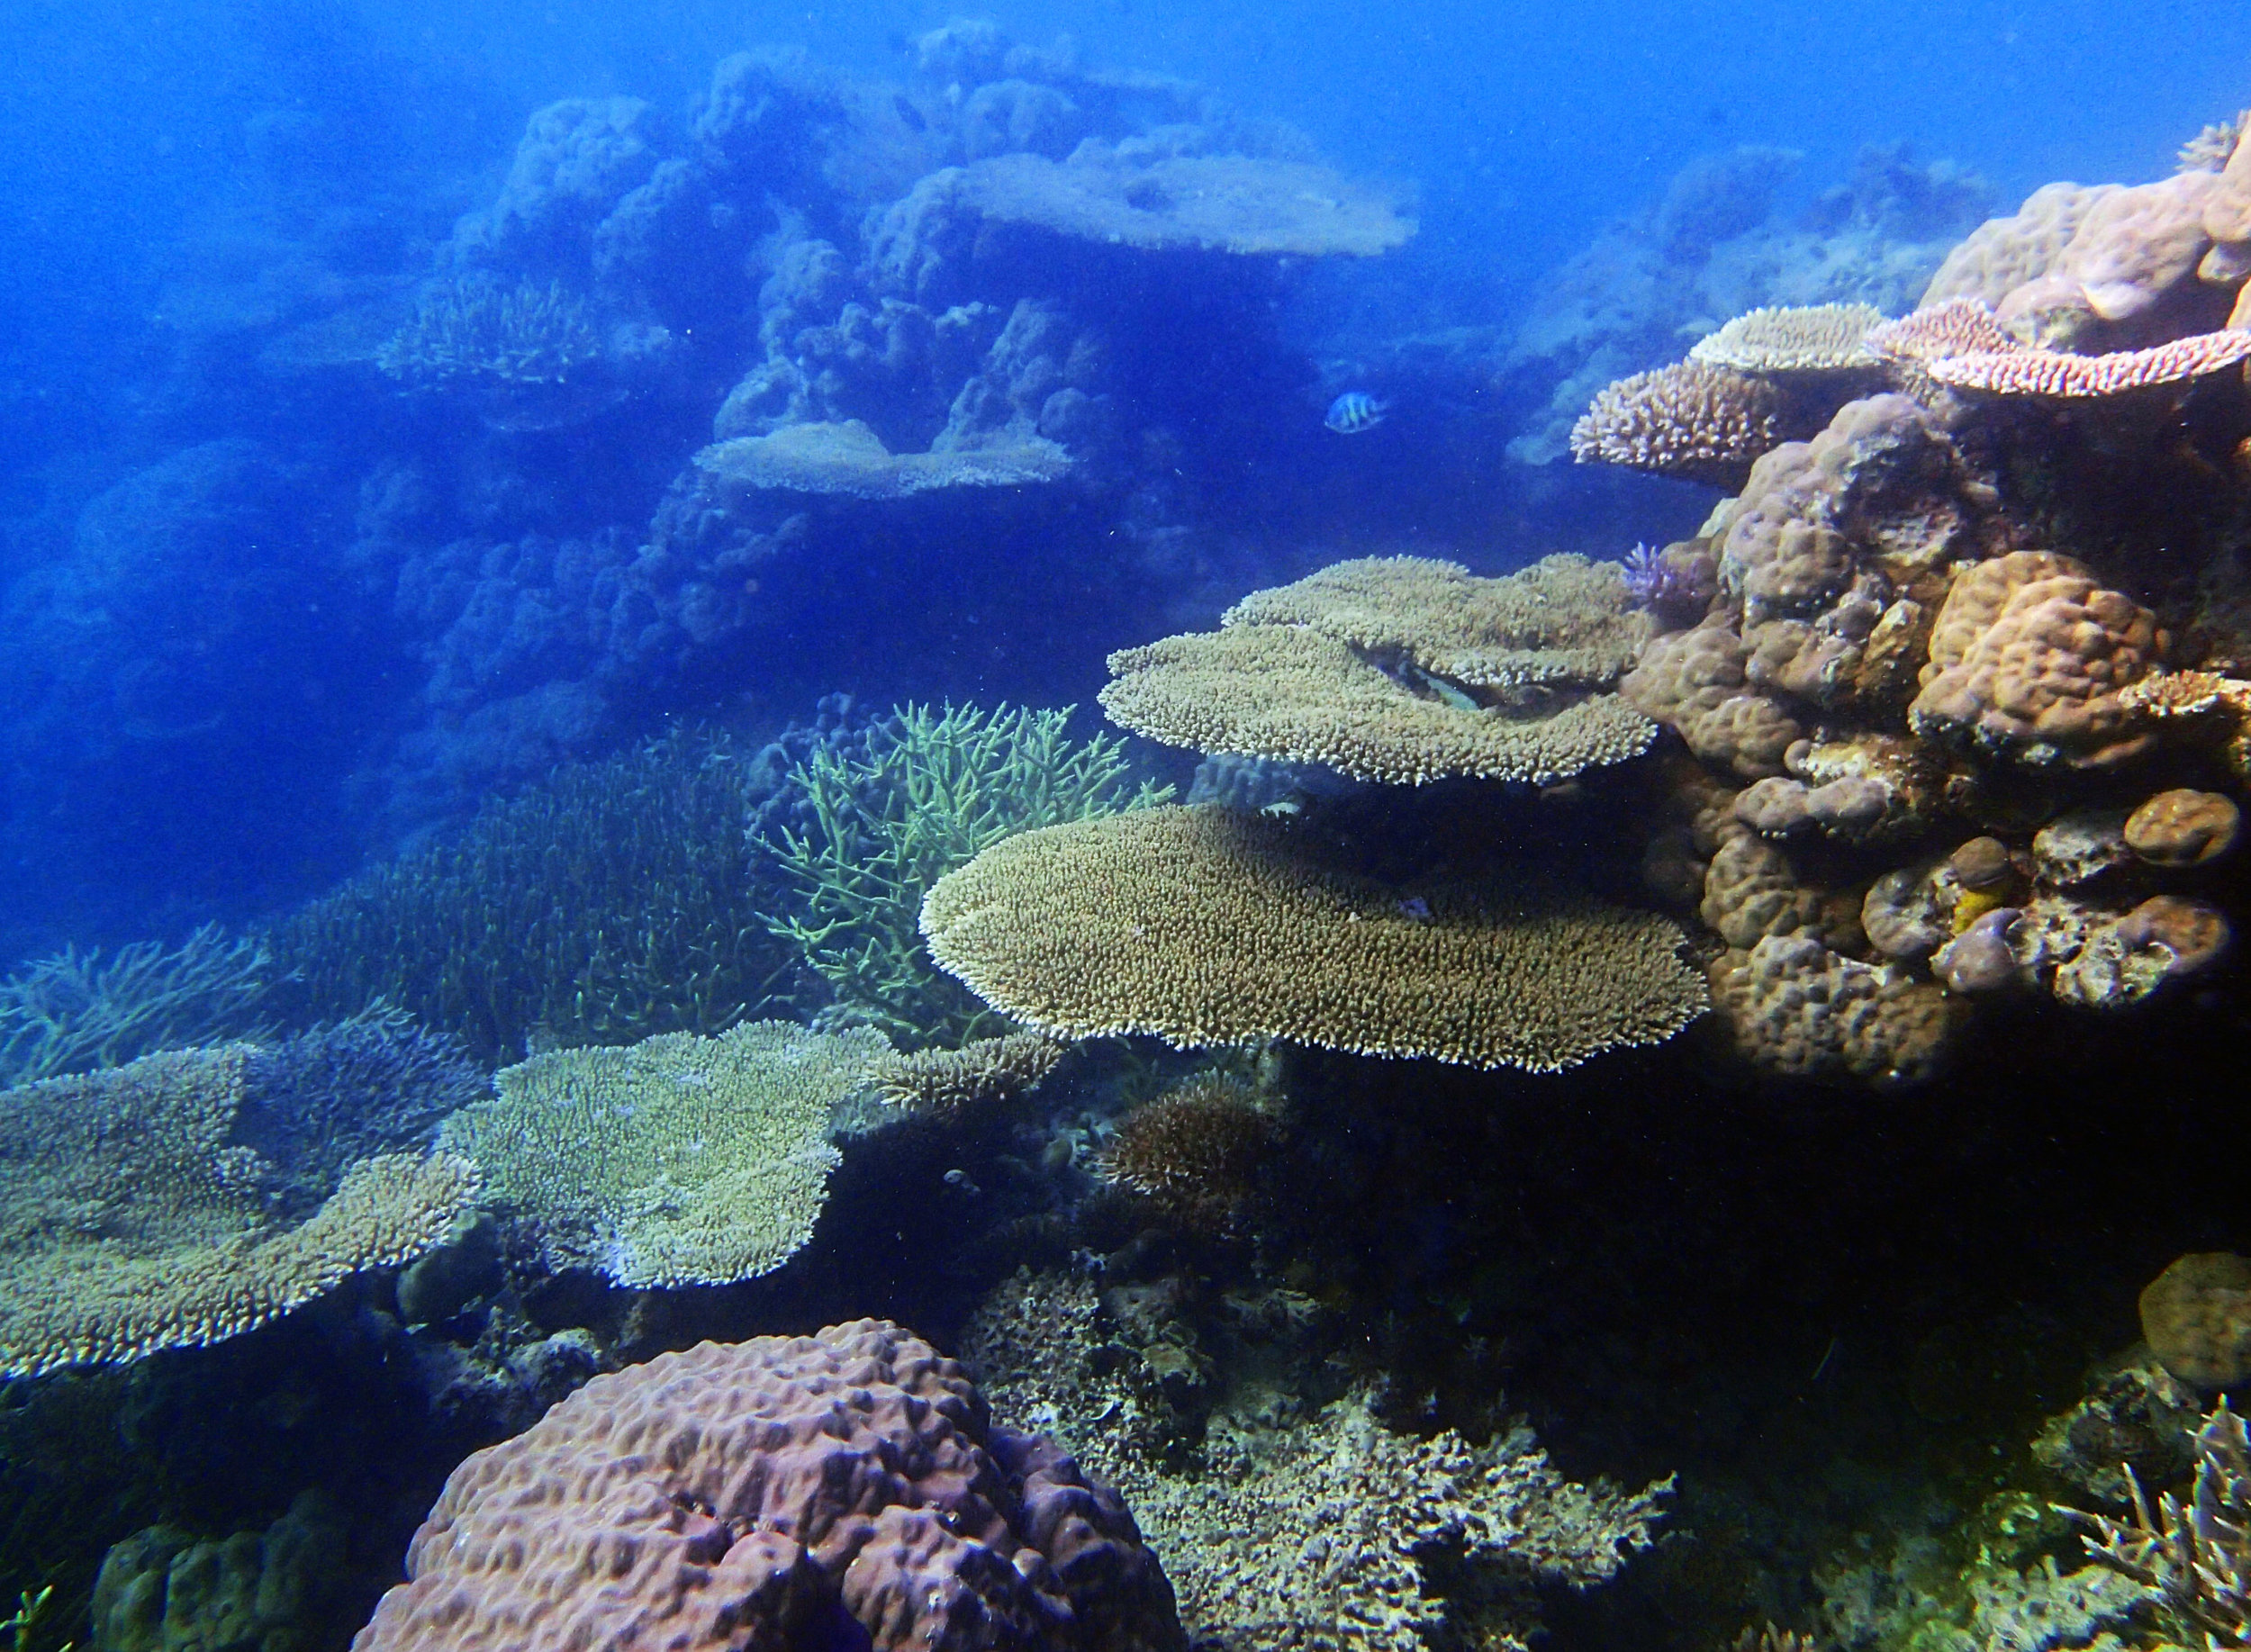 lagoonal patch reef 1-26-15.jpg